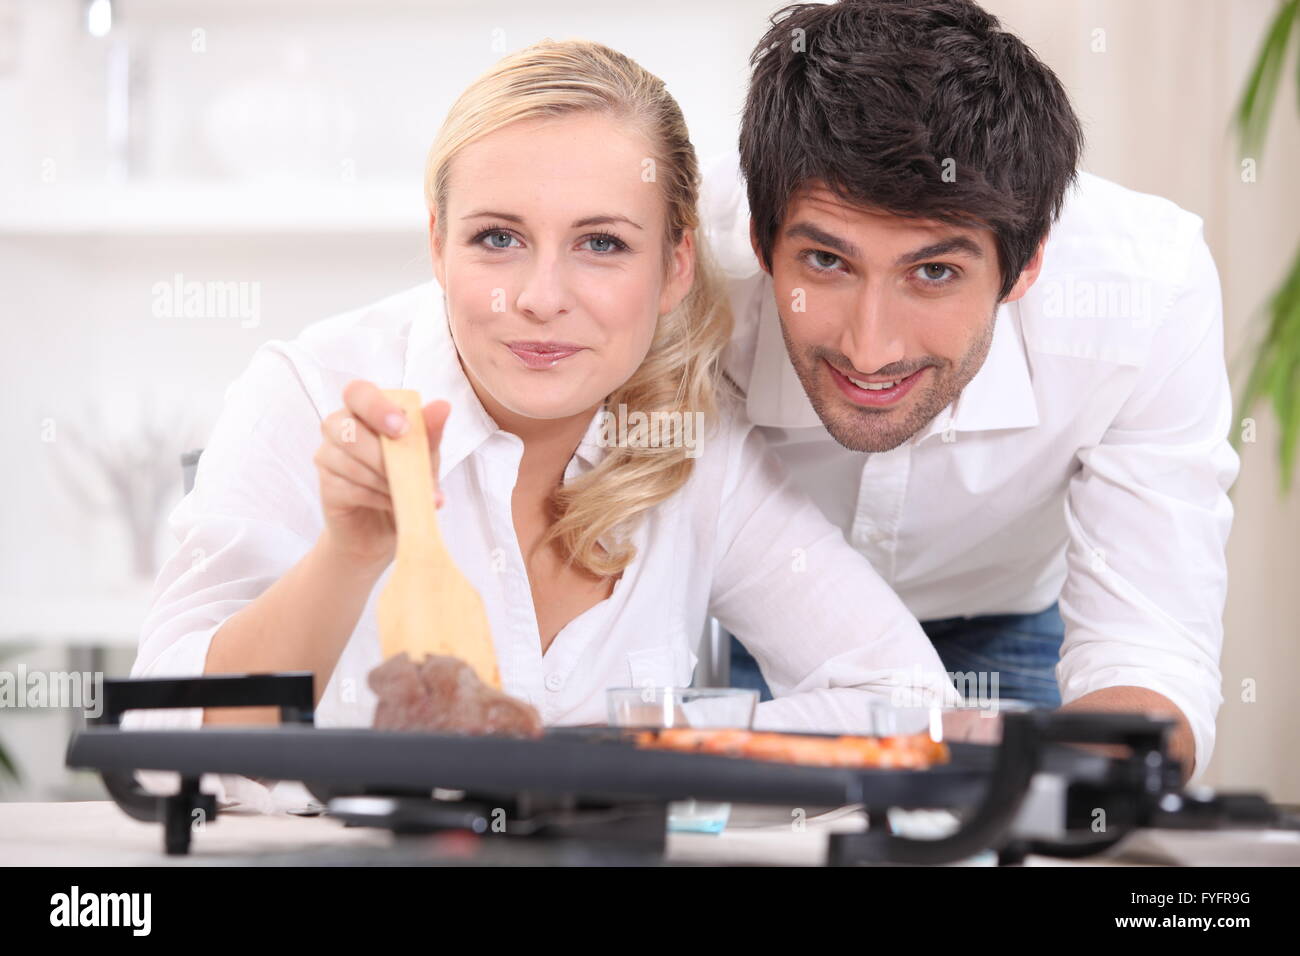 Paar, Kochen, Steak und Gambas auf einer Tischplatte Kochplatte Stockfoto